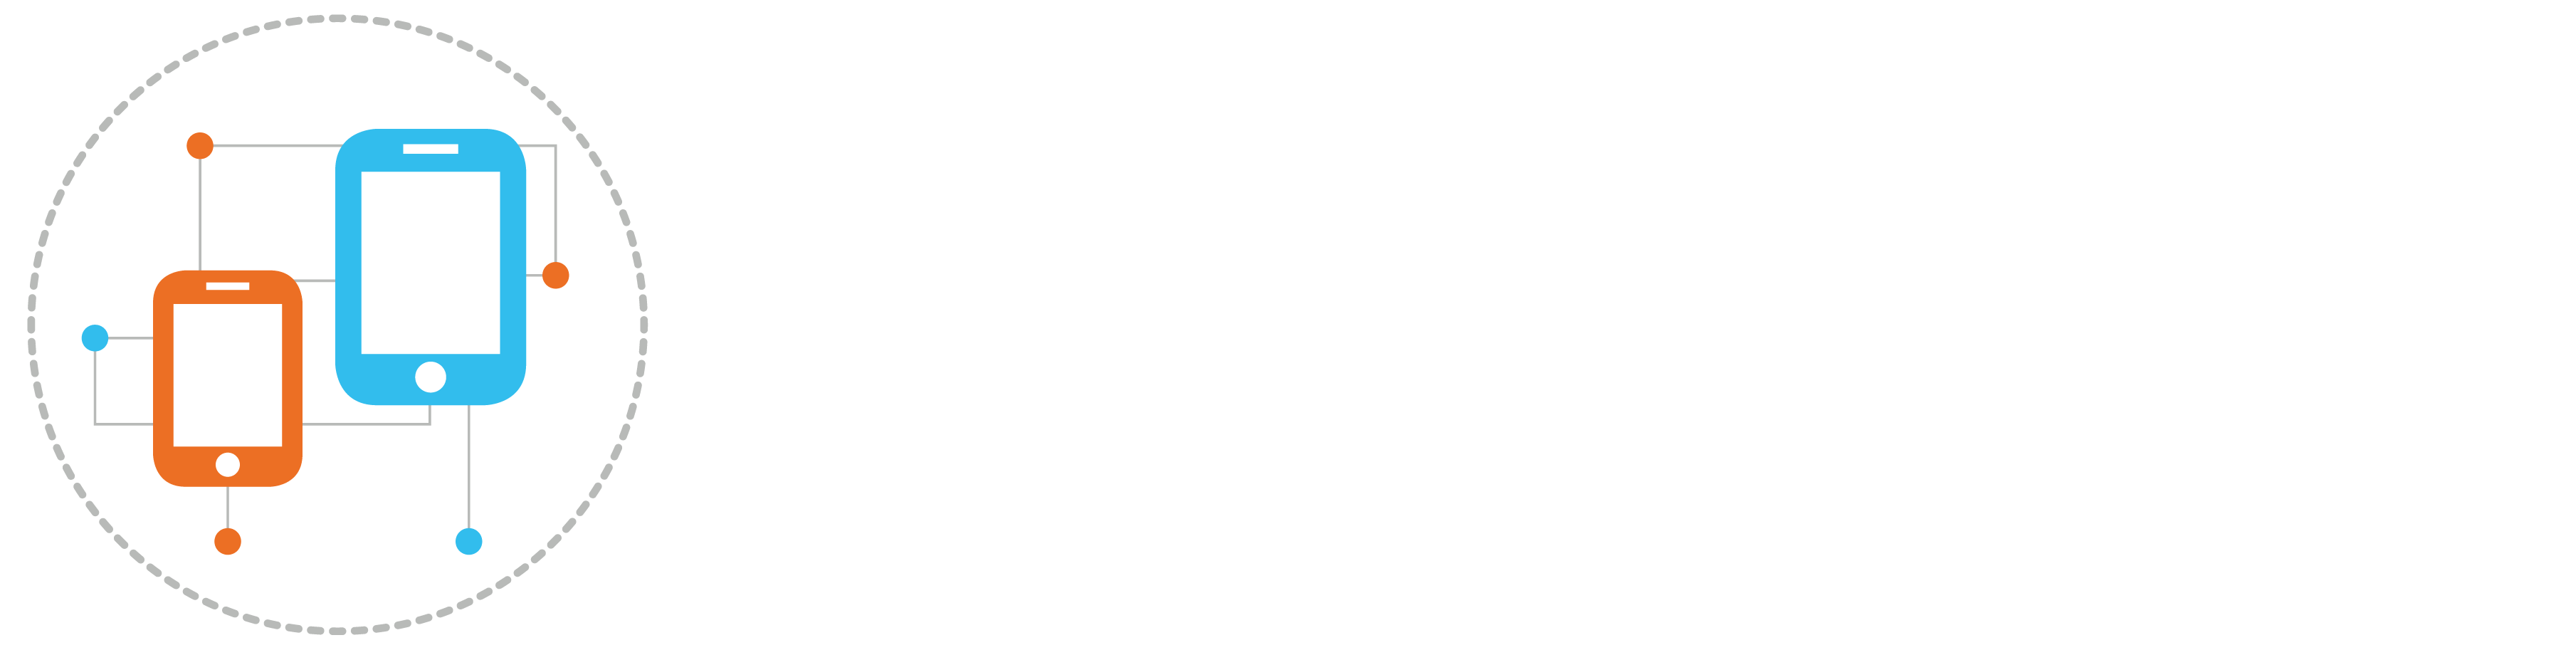 Logotipo de Shopnet